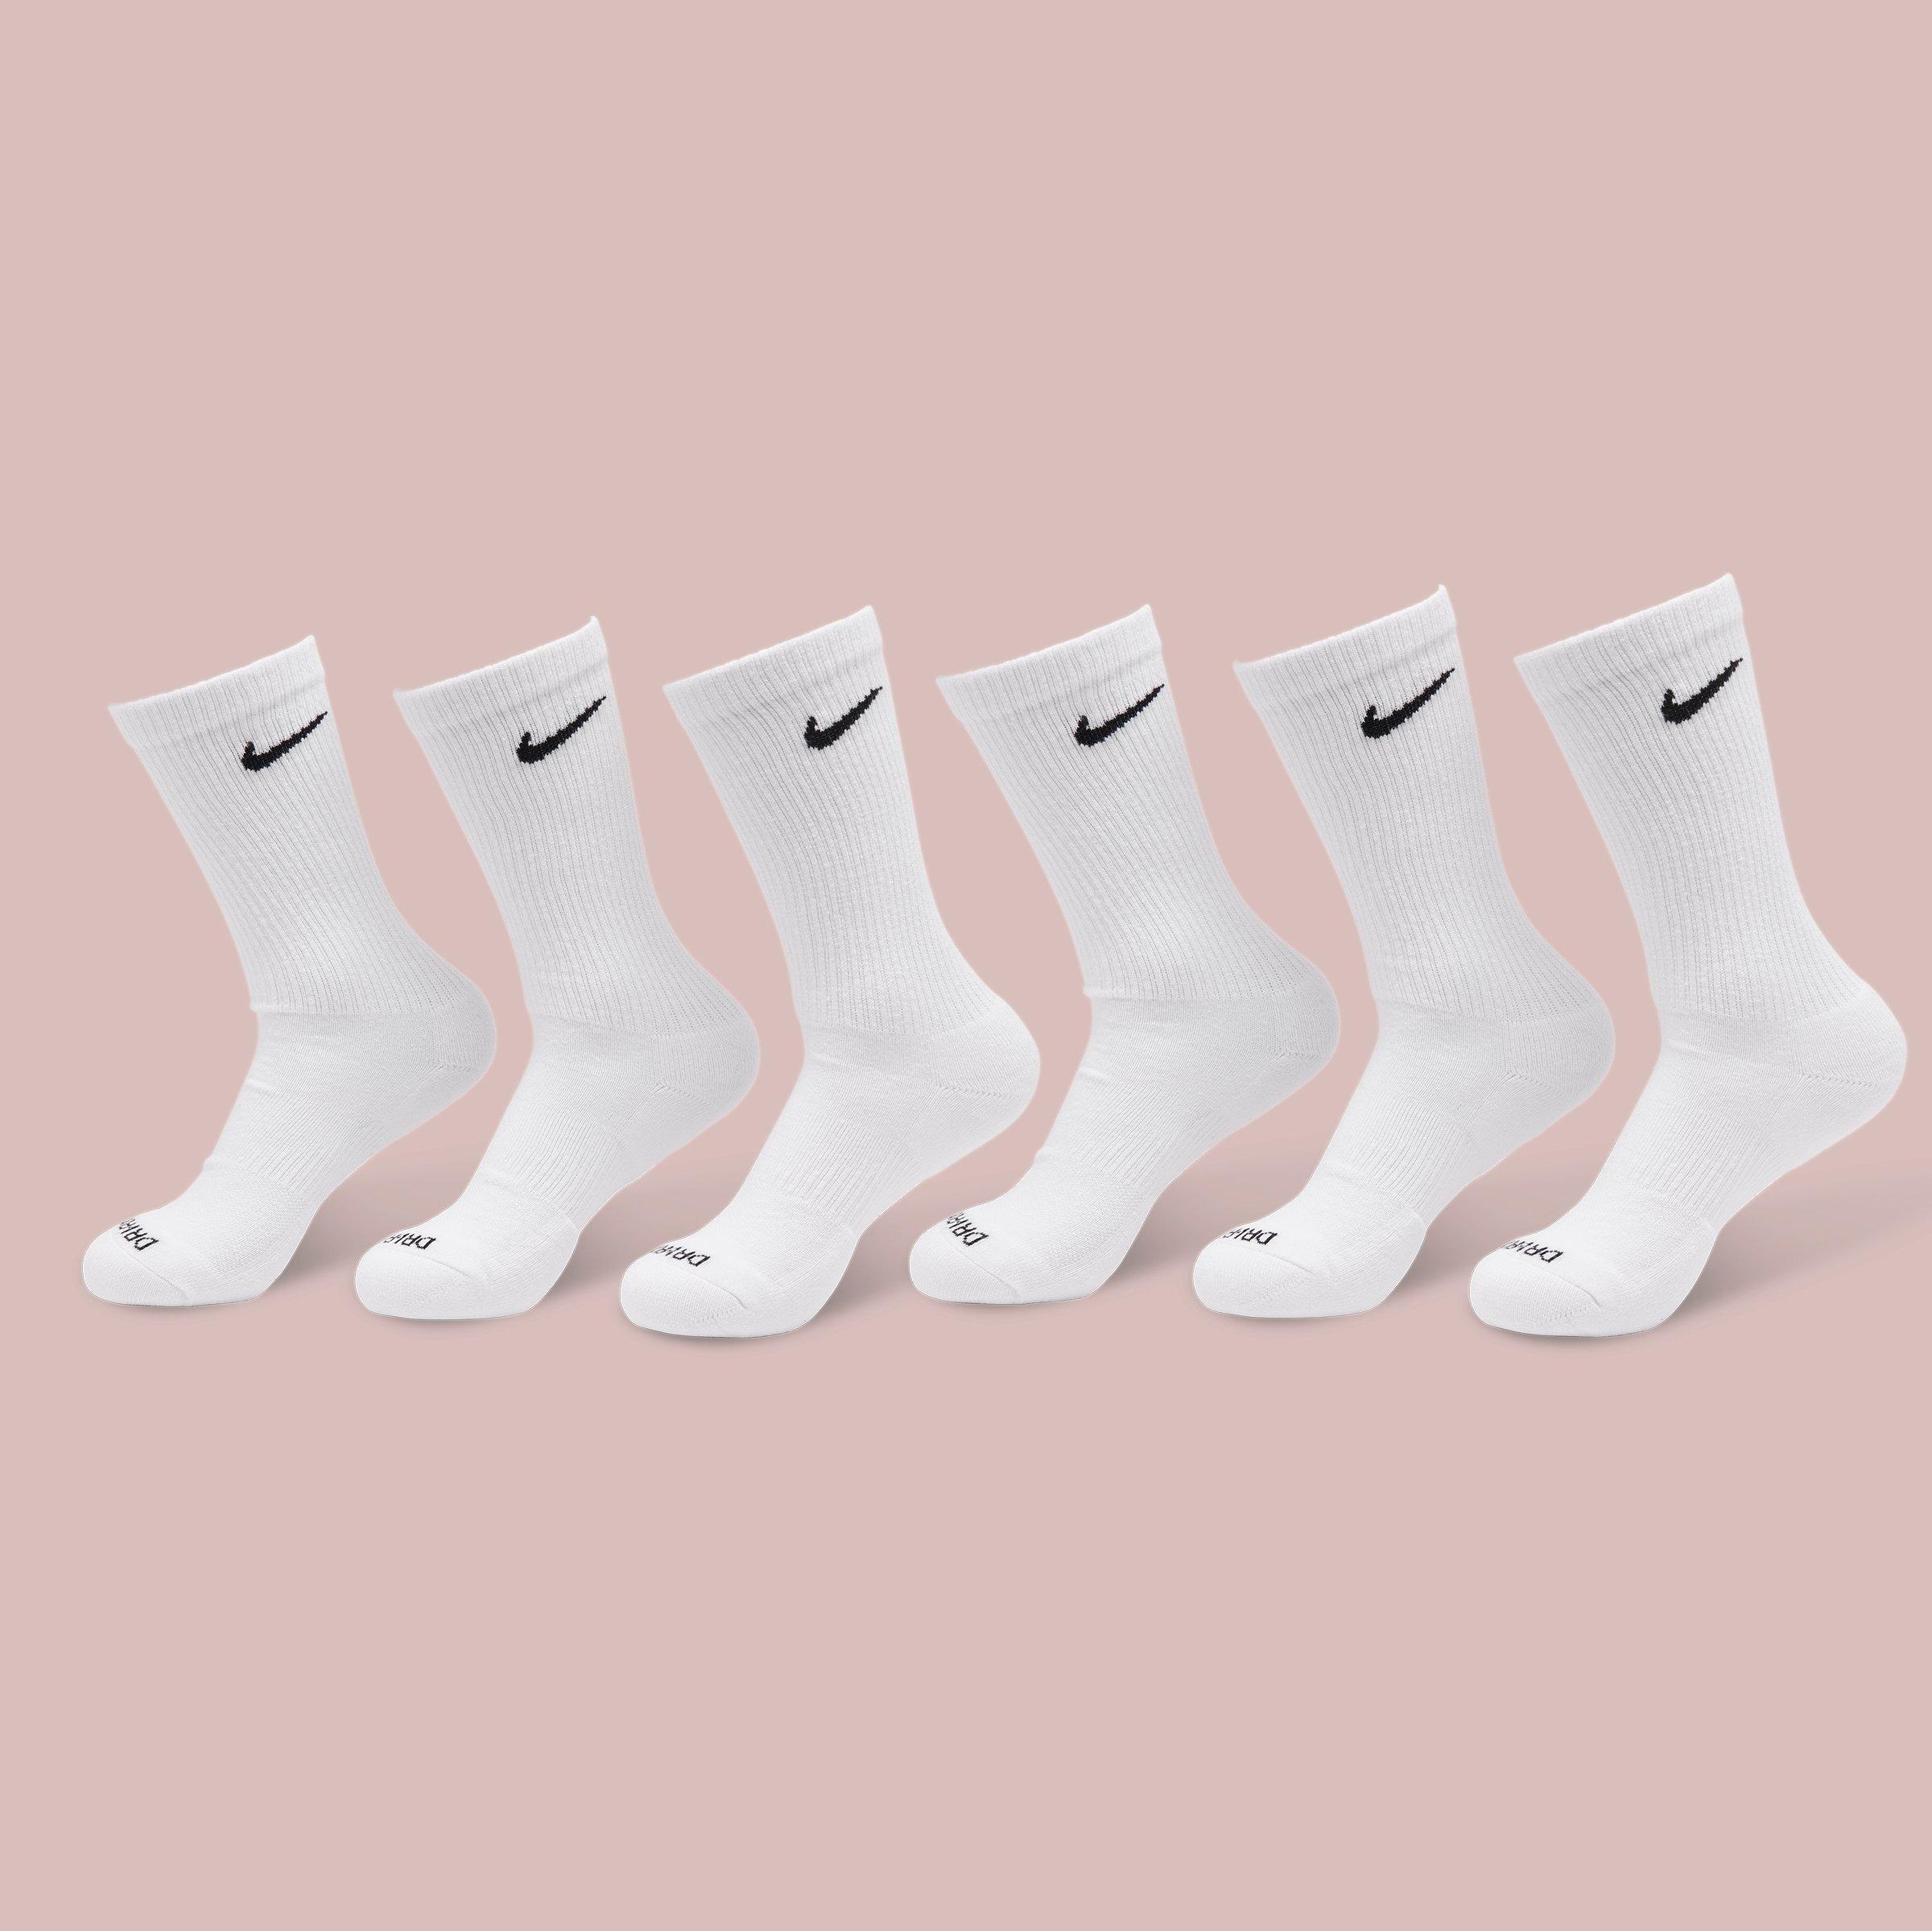 jd white nike socks